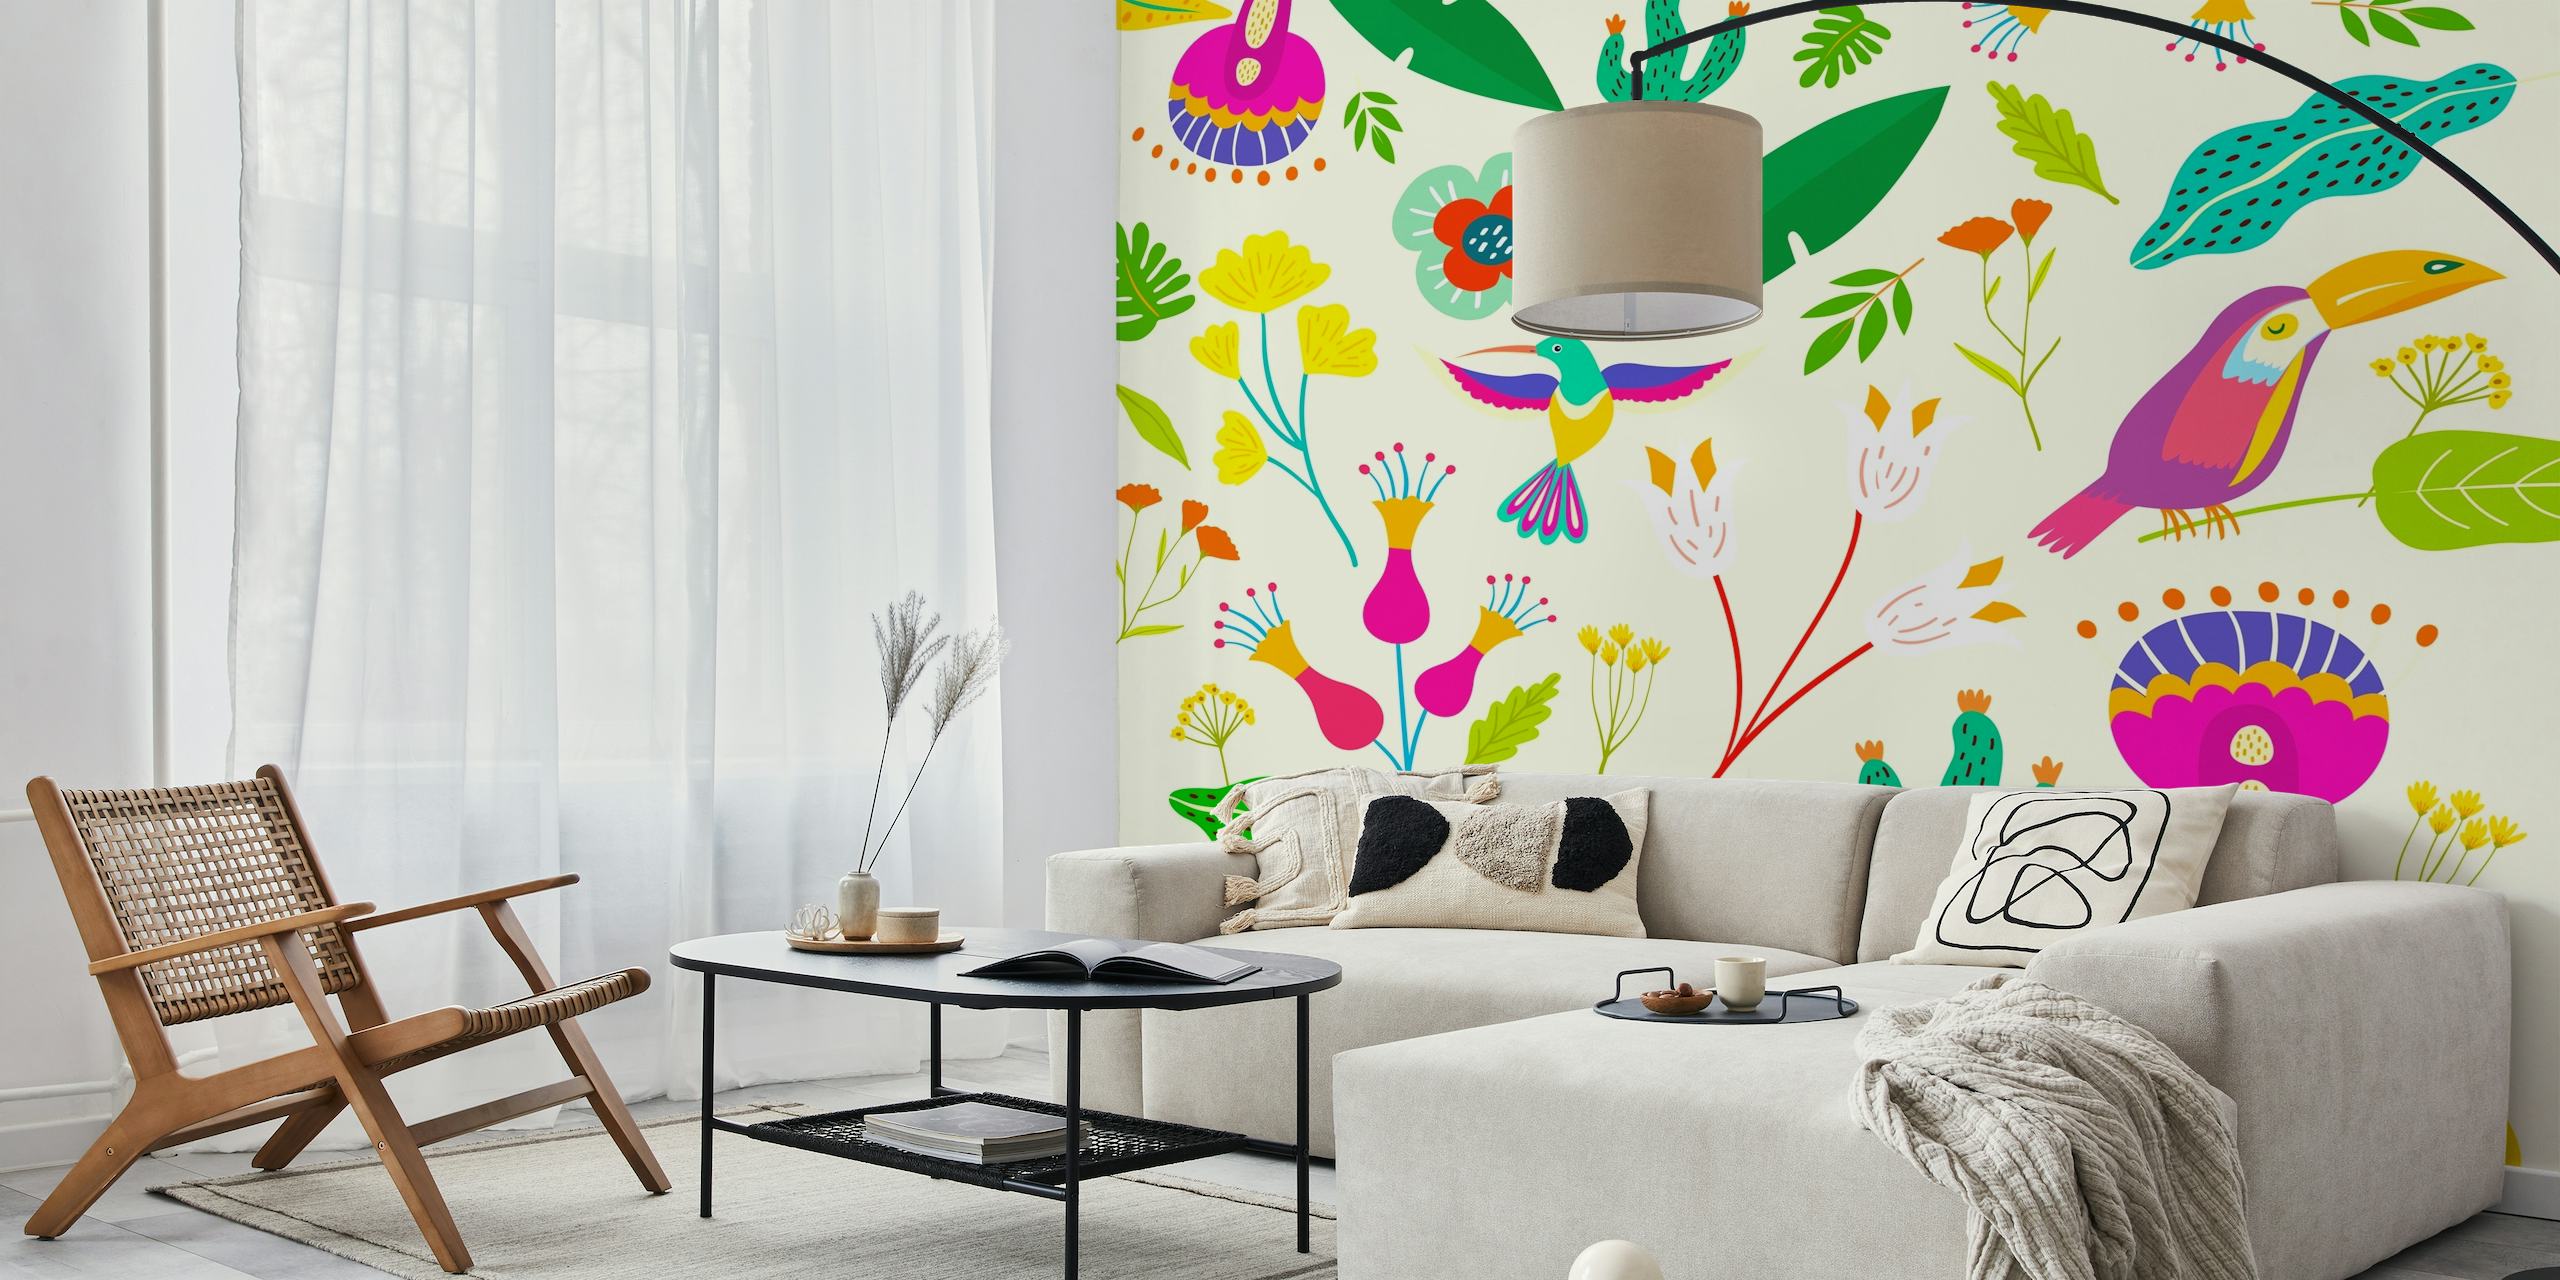 Mural de parede Frida Tropical Clean com pássaros estilizados e plantas tropicais